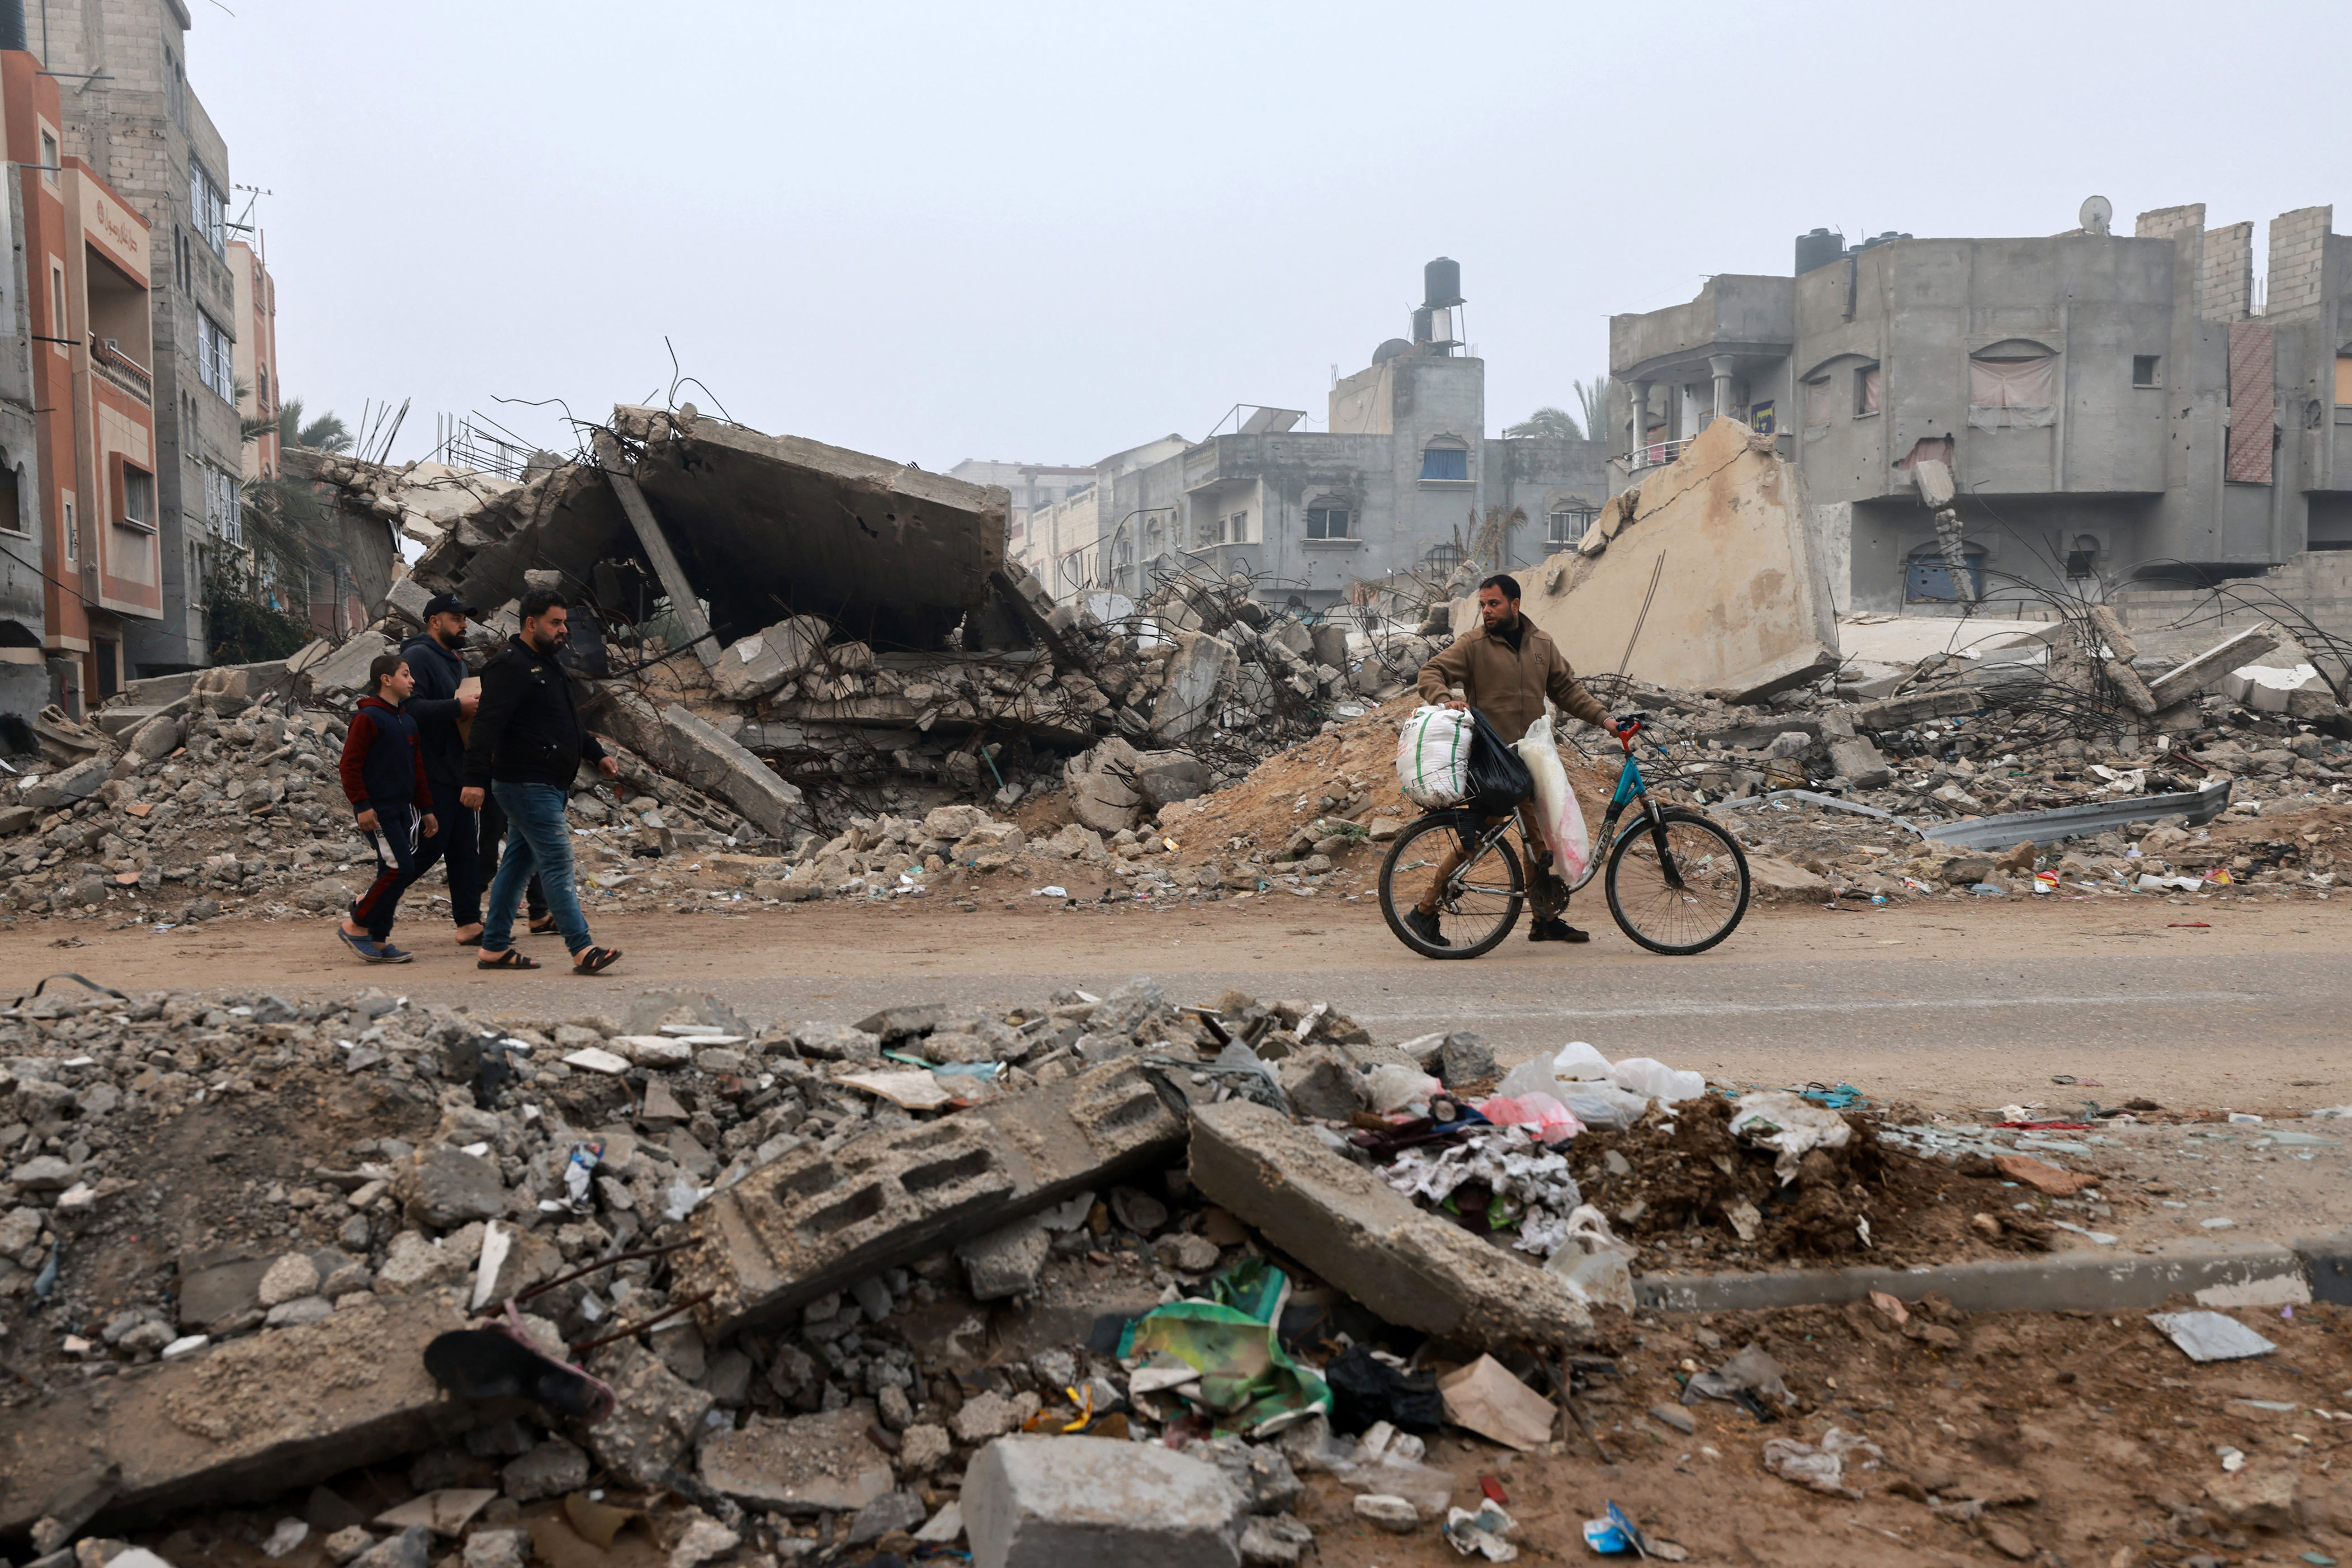 moody’s downgrades israel’s credit rating, citing war in gaza